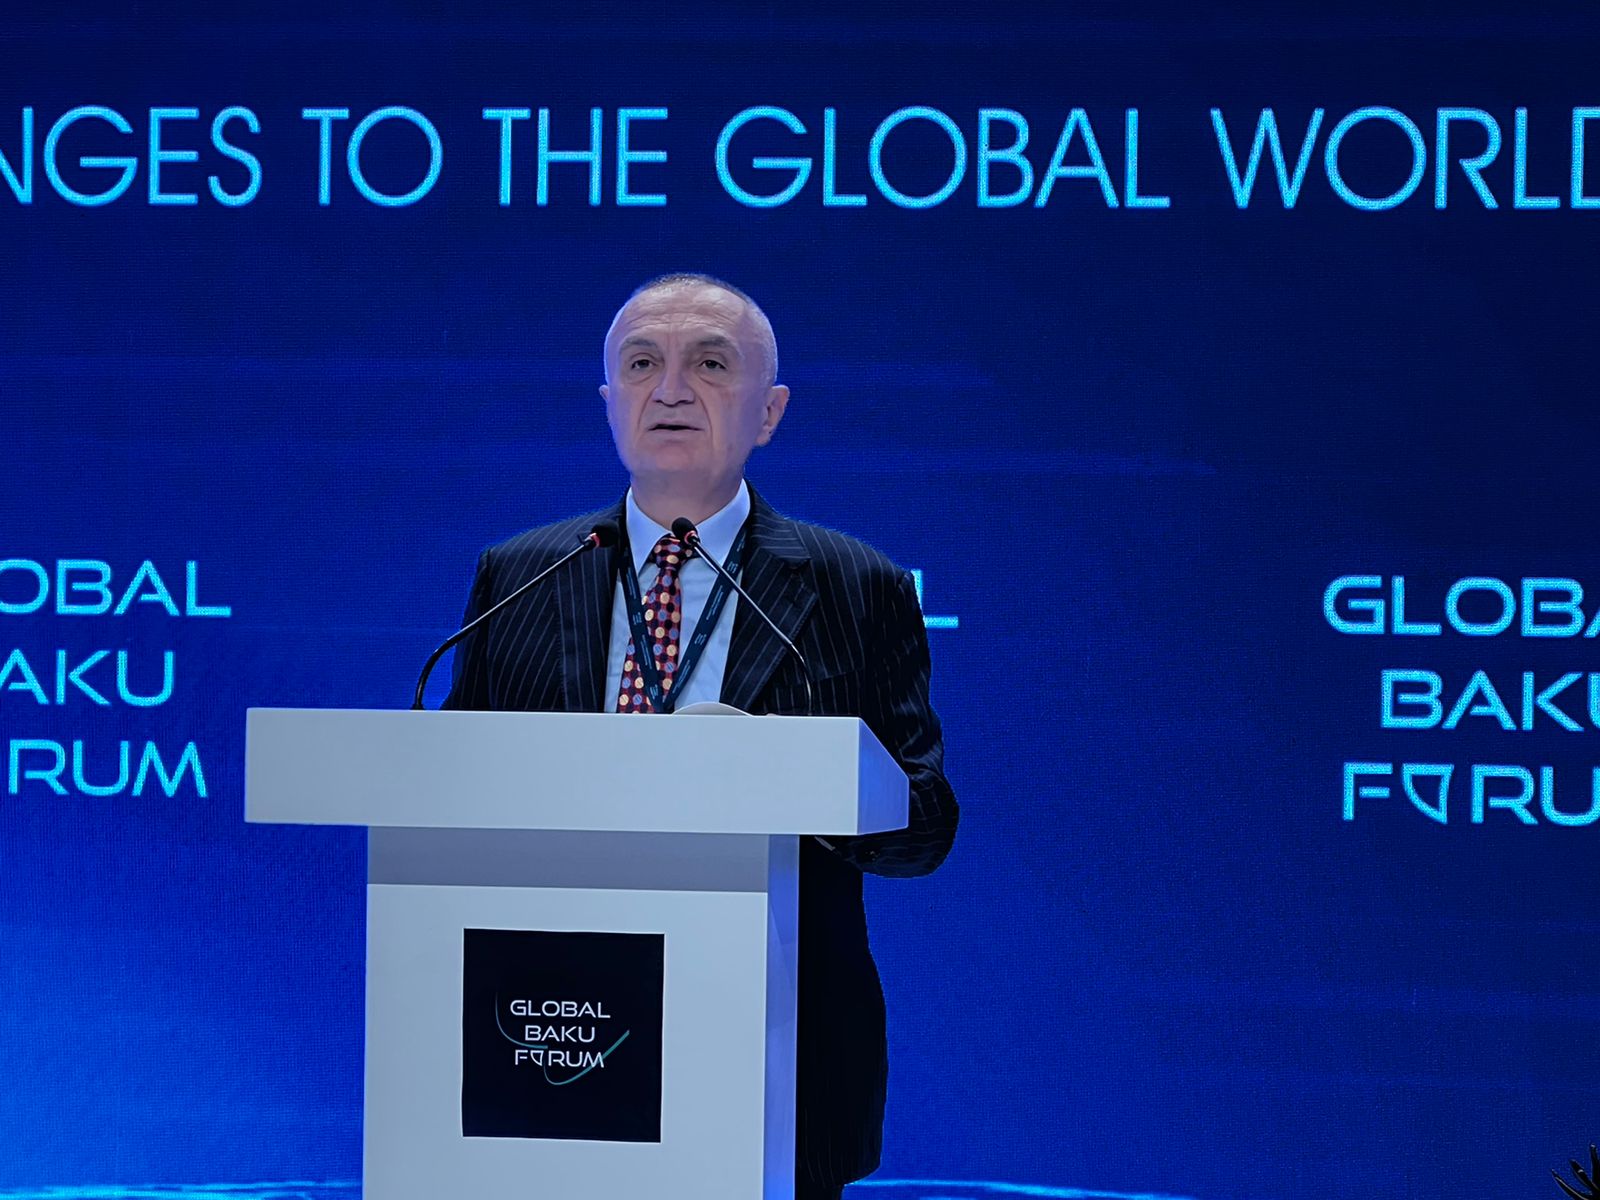 Presidenti Meta në sesionin përmbyllës të Forumit IX Global të Bakusë me temë “Sfidat ndaj rendit botëror” width=